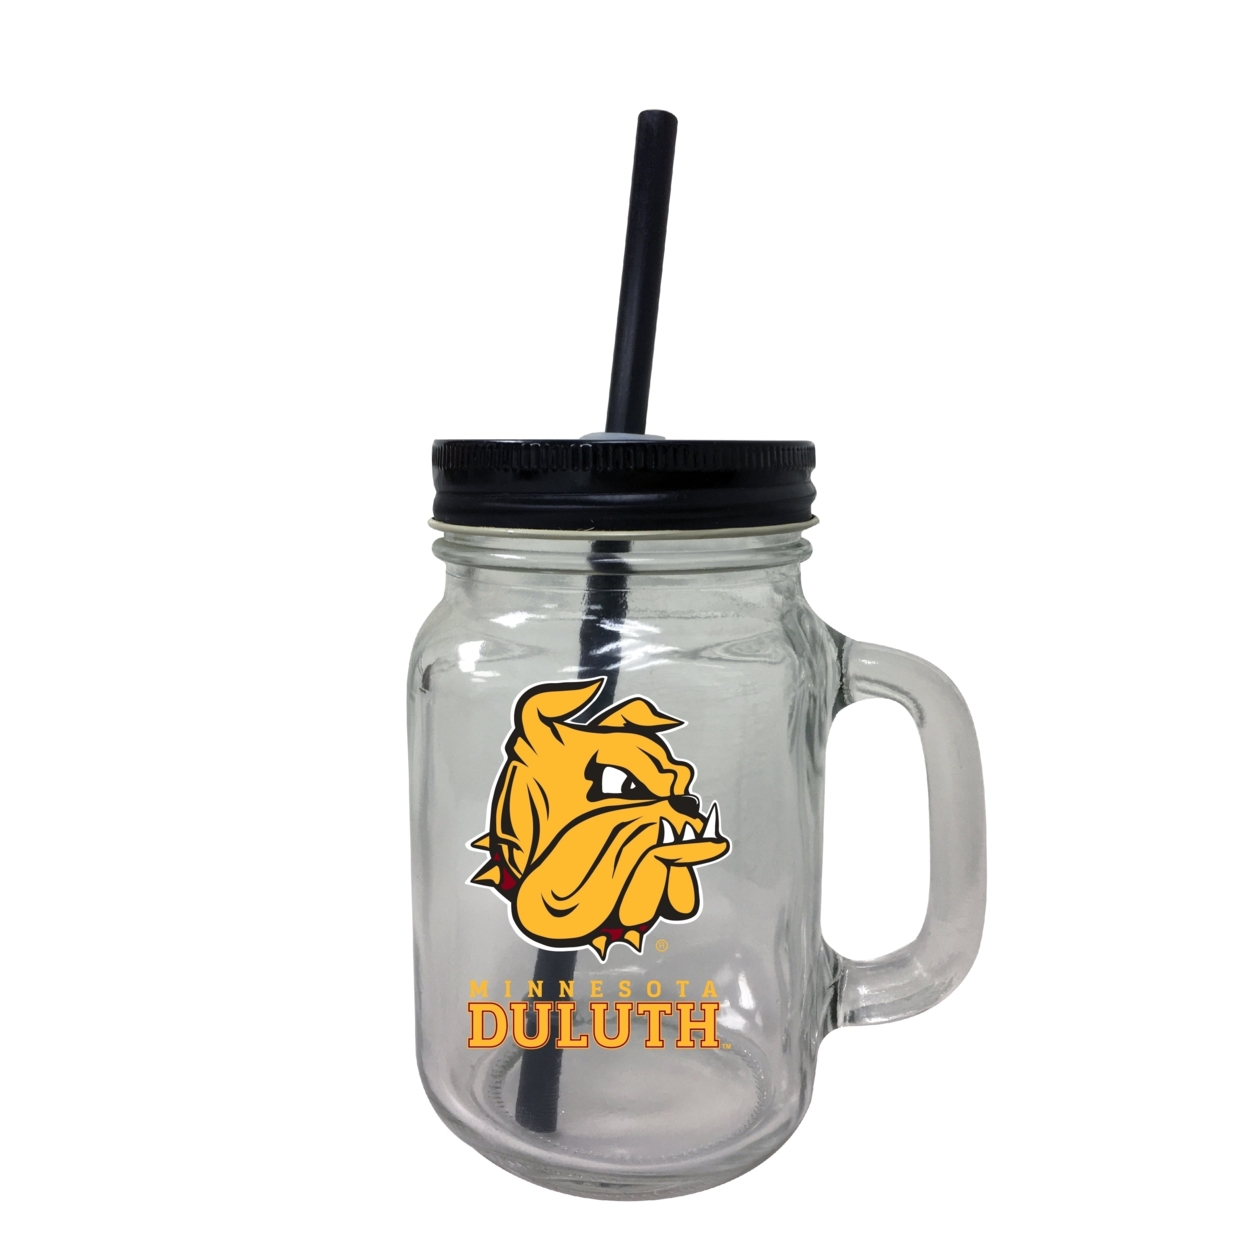 University Of Minnesota Duluth Mason Jar Glass 2-Pack